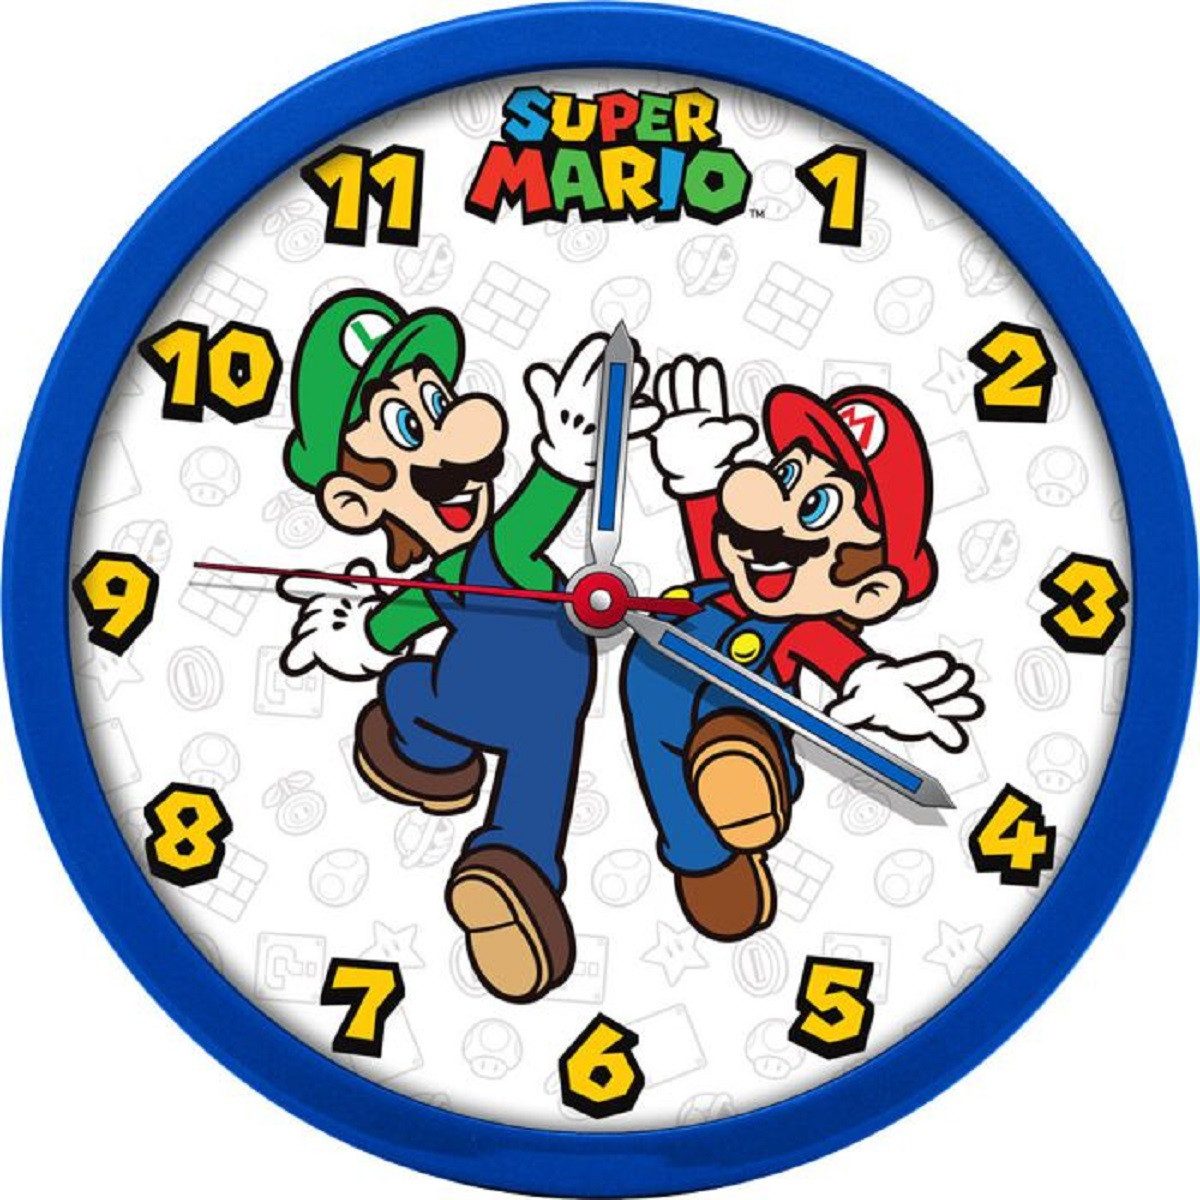 Super Mario Wanduhr uper Mario analoge Wanduhr 25cm: Der Blickfang für jedes Gamer-Zimmer